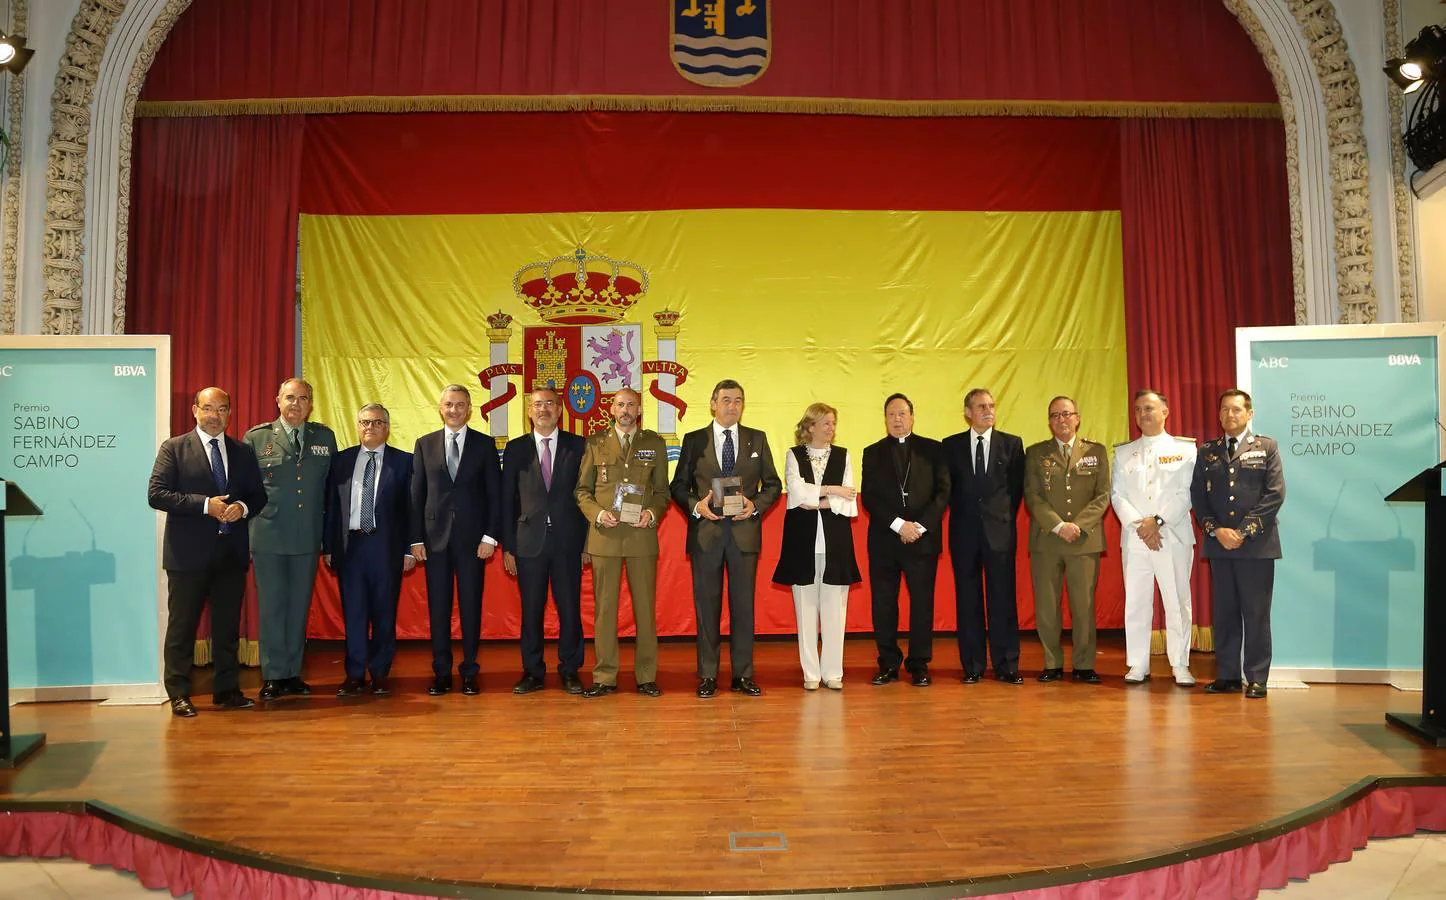 Fotografía de familia del acto de entrega del Premio Sabino Fernández Campo en el salón de actos de la Capitanía General de Sevilla